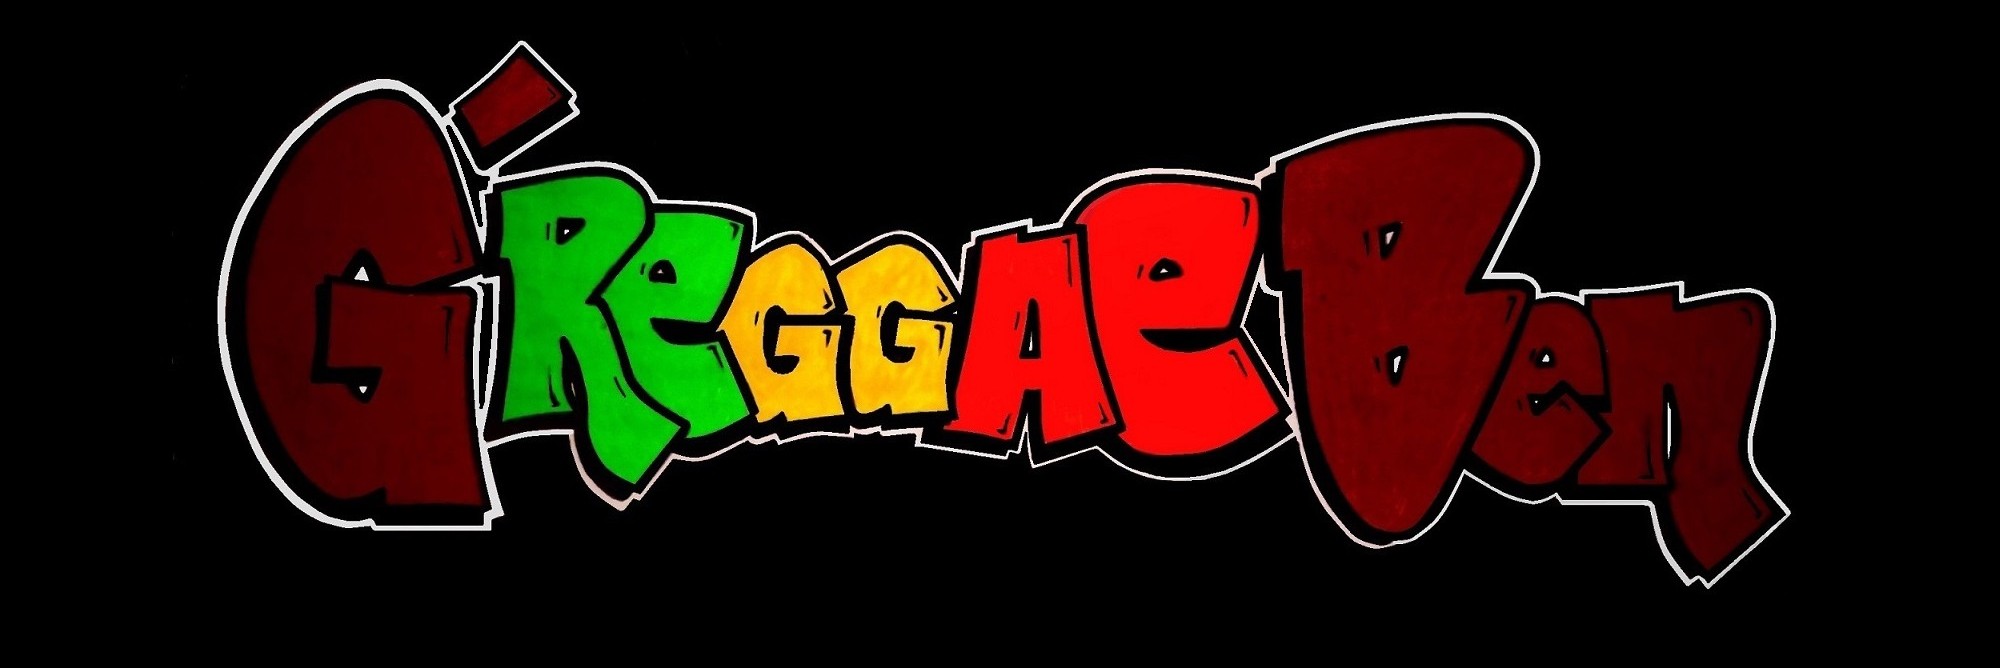 G'reggaeben